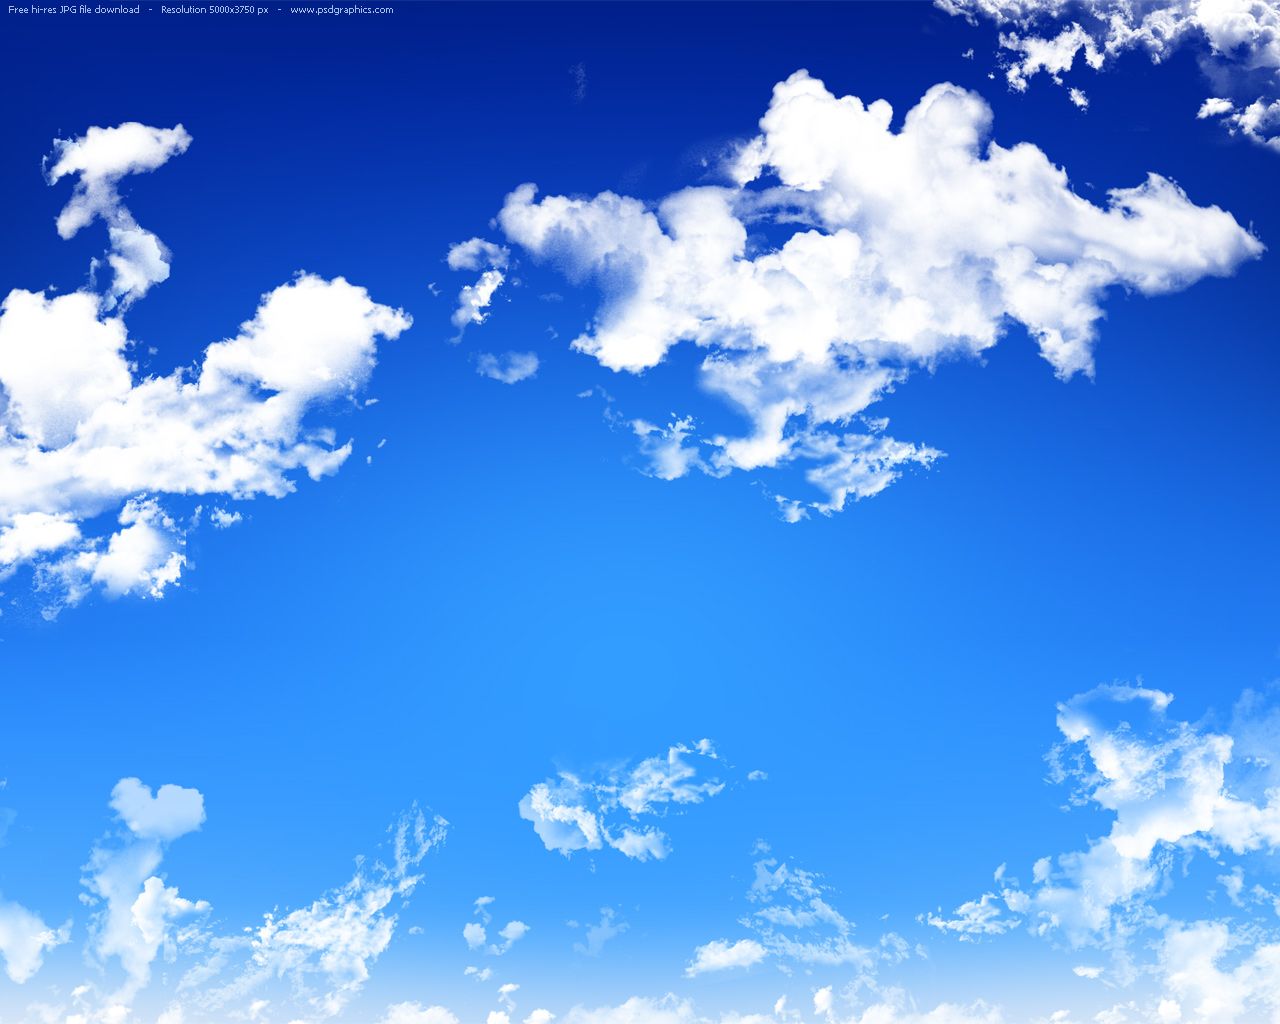 Hãy ngắm nhìn bức ảnh với background bầu trời cao vời này. Bầu trời trong xanh, không một gợn mây nào, giống như một tấm bức tranh hoàn hảo. Cảm giác như đang bay lượn giữa không trung thật tuyệt vời.